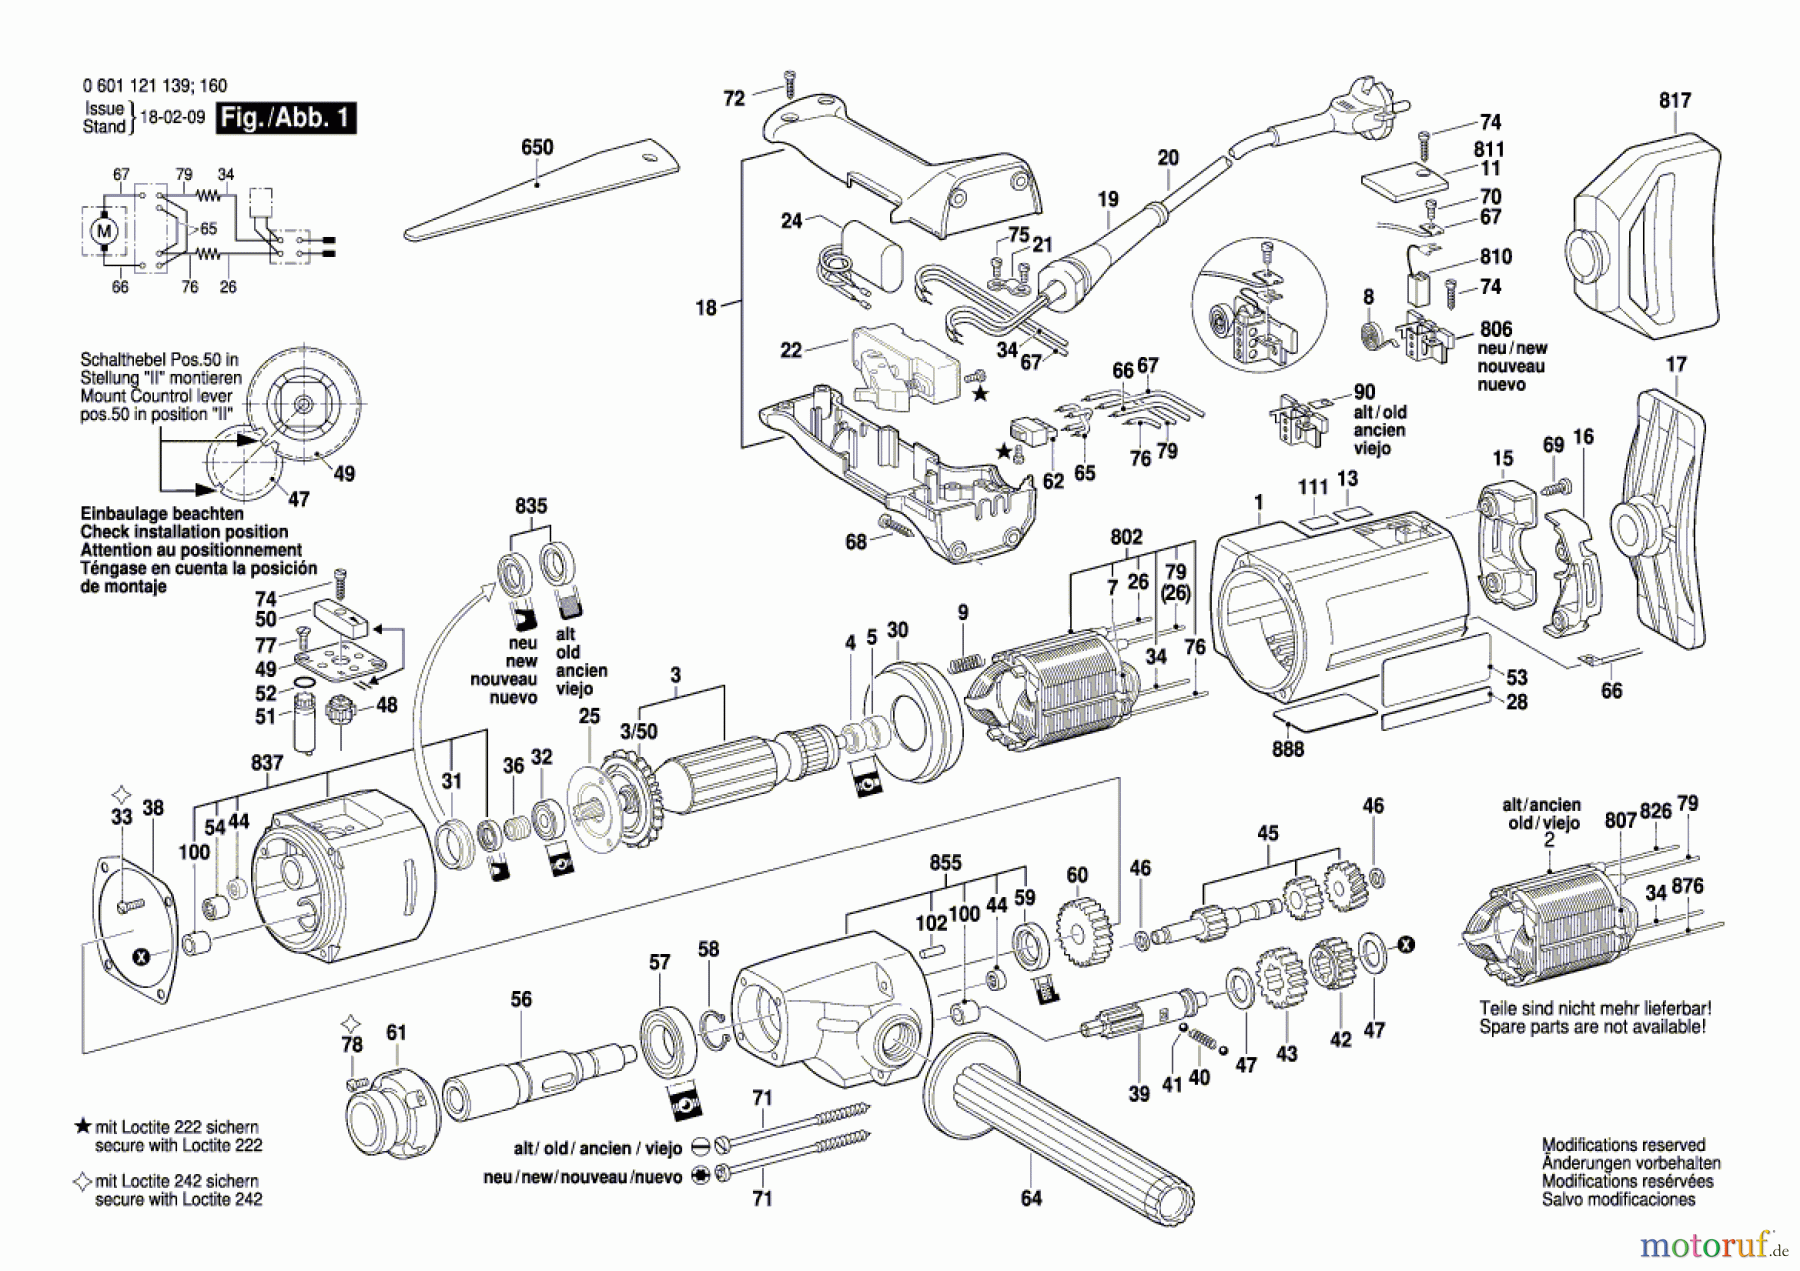  Bosch Werkzeug Bohrmaschine GBM 23-2 Seite 1